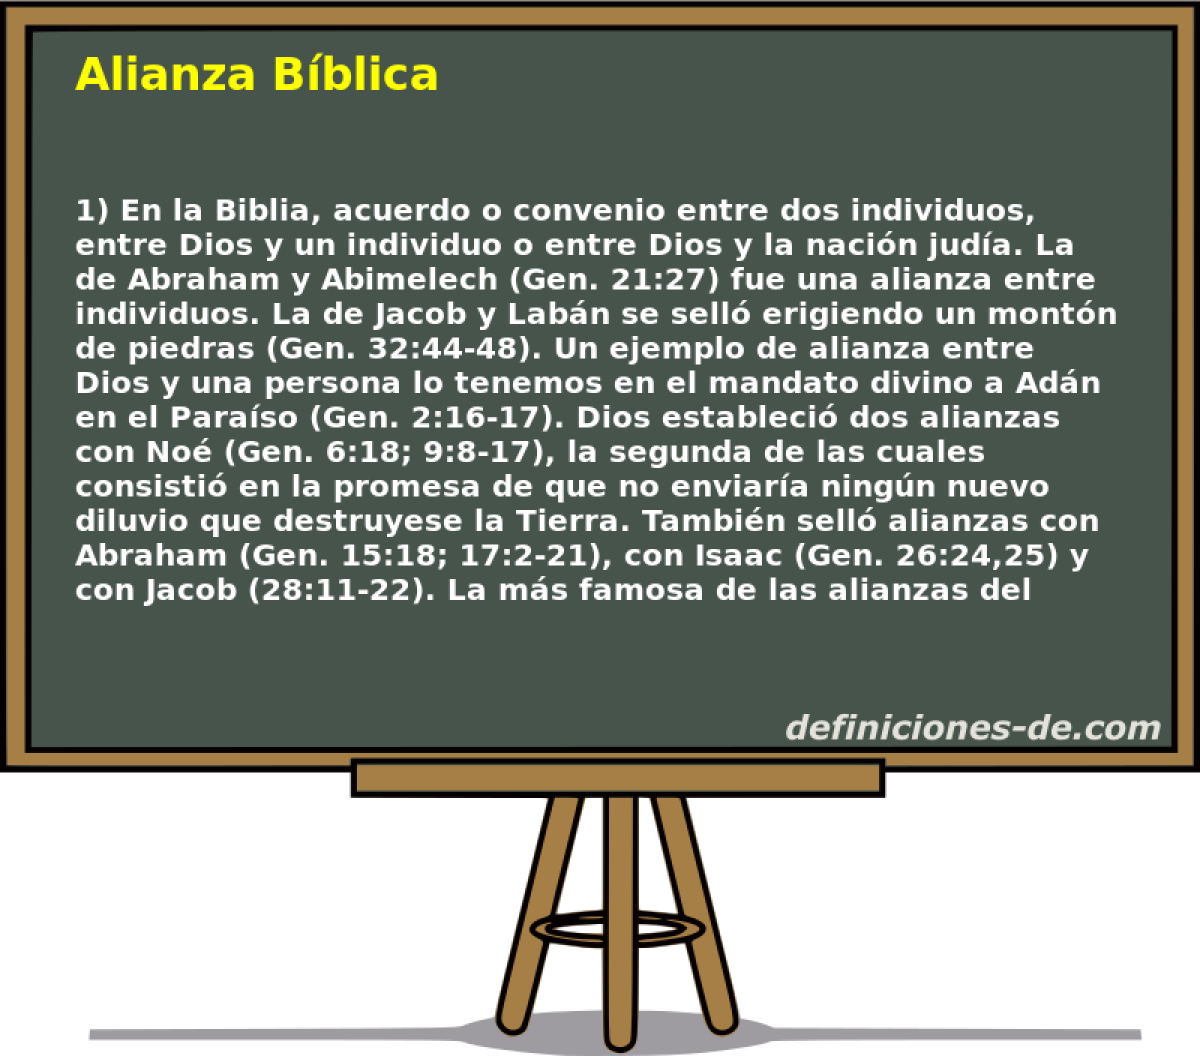 Alianza Bblica 